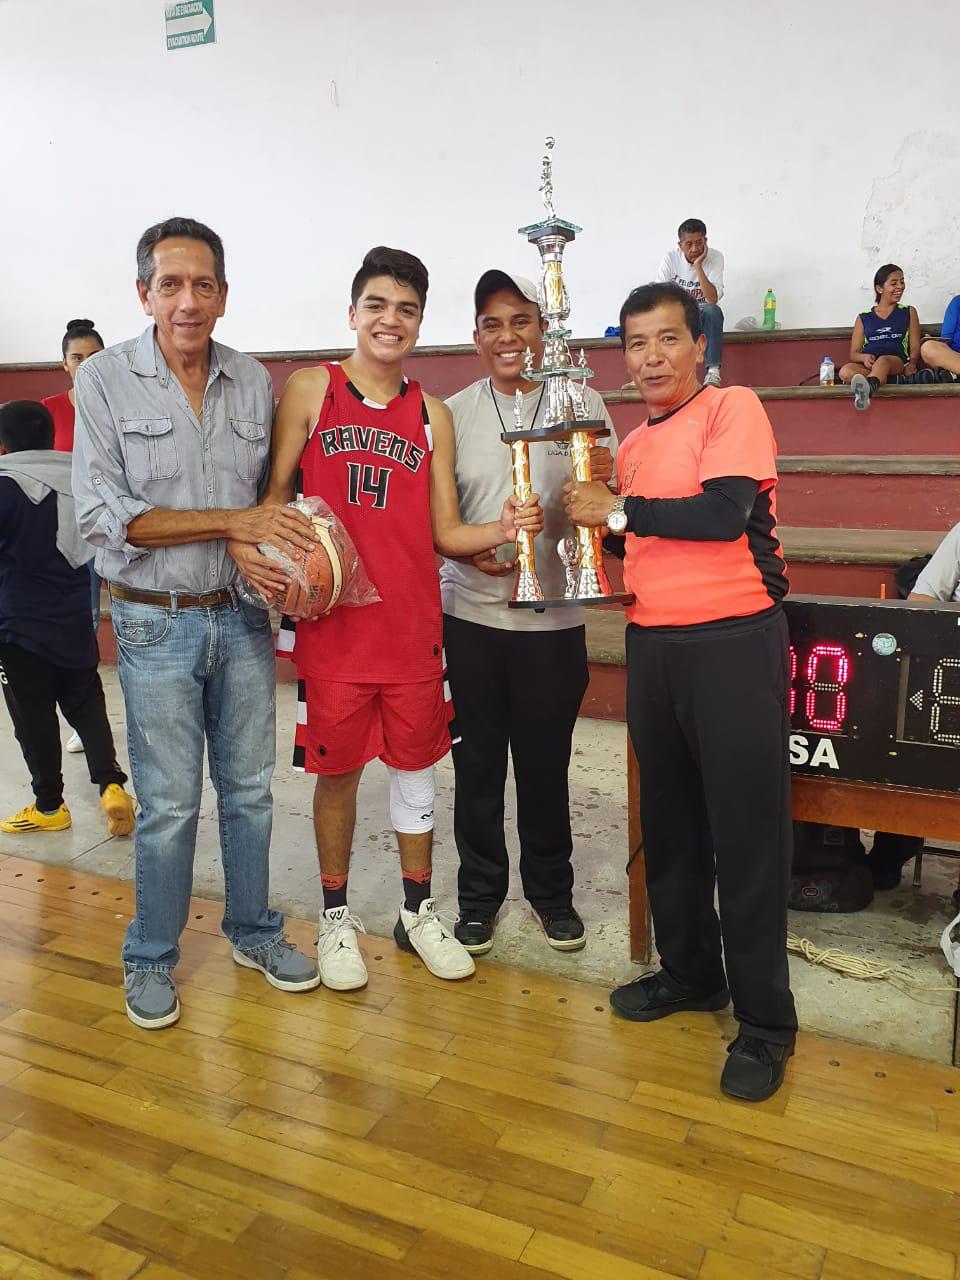 Raven´s “A” en varonil y Selección Zamora en femenil, fueron campeones de la liga D.I.A. de basquetbol